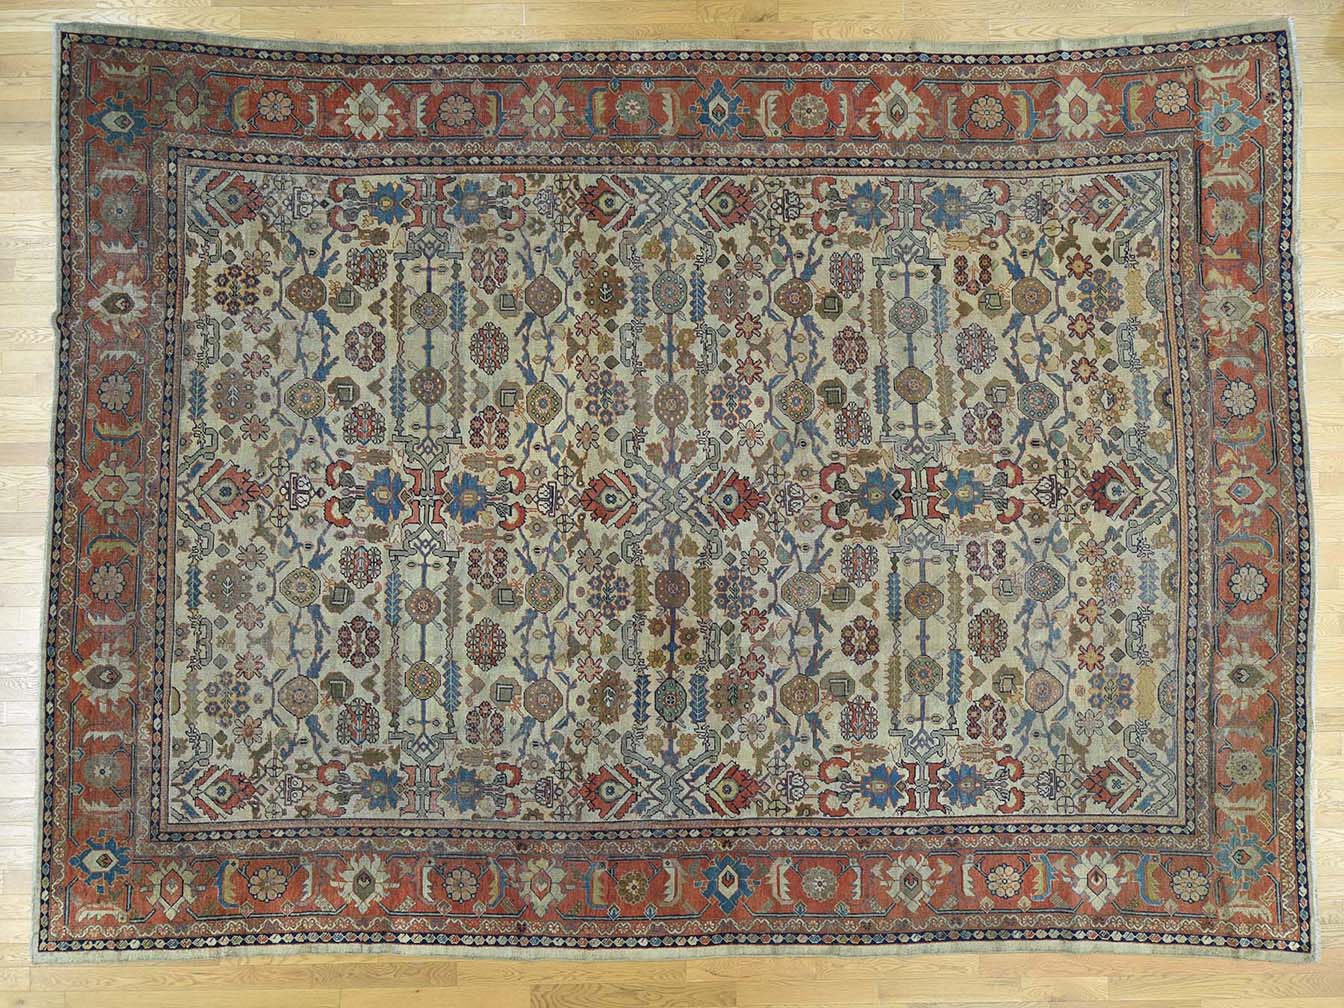 Antique mahal Carpet - # 55511